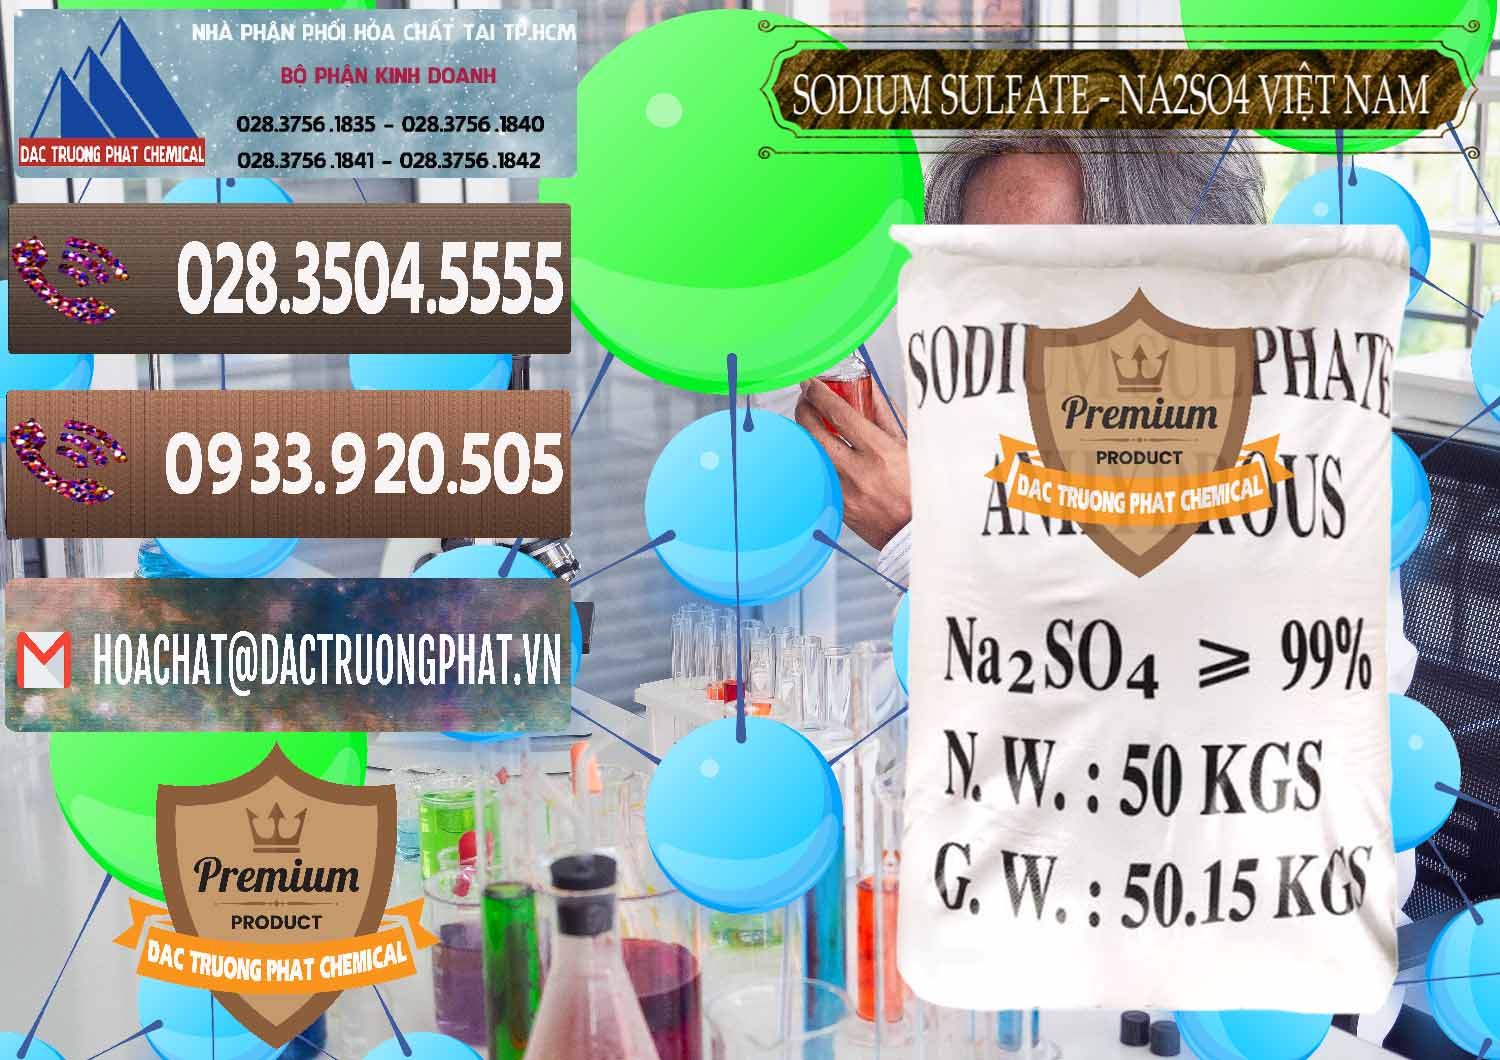 Cty chuyên kinh doanh _ bán Sodium Sulphate - Muối Sunfat Na2SO4 Việt Nam - 0355 - Nơi chuyên cung cấp & bán hóa chất tại TP.HCM - hoachatviet.net